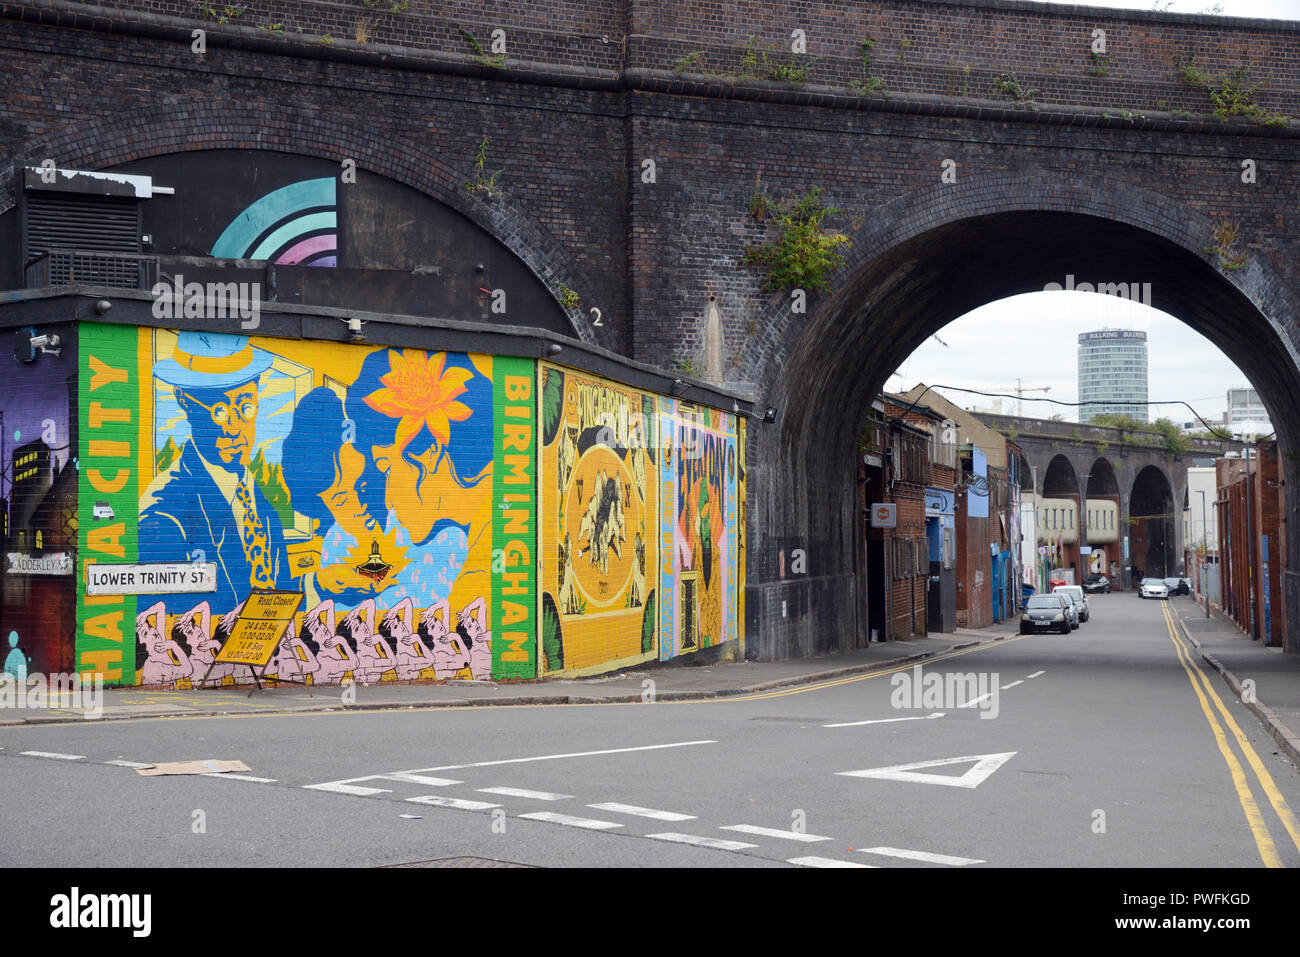 Street Art & arcos de ferrocarril en las antiguas calles de Digbeth Industrial Birmingham England Foto de stock